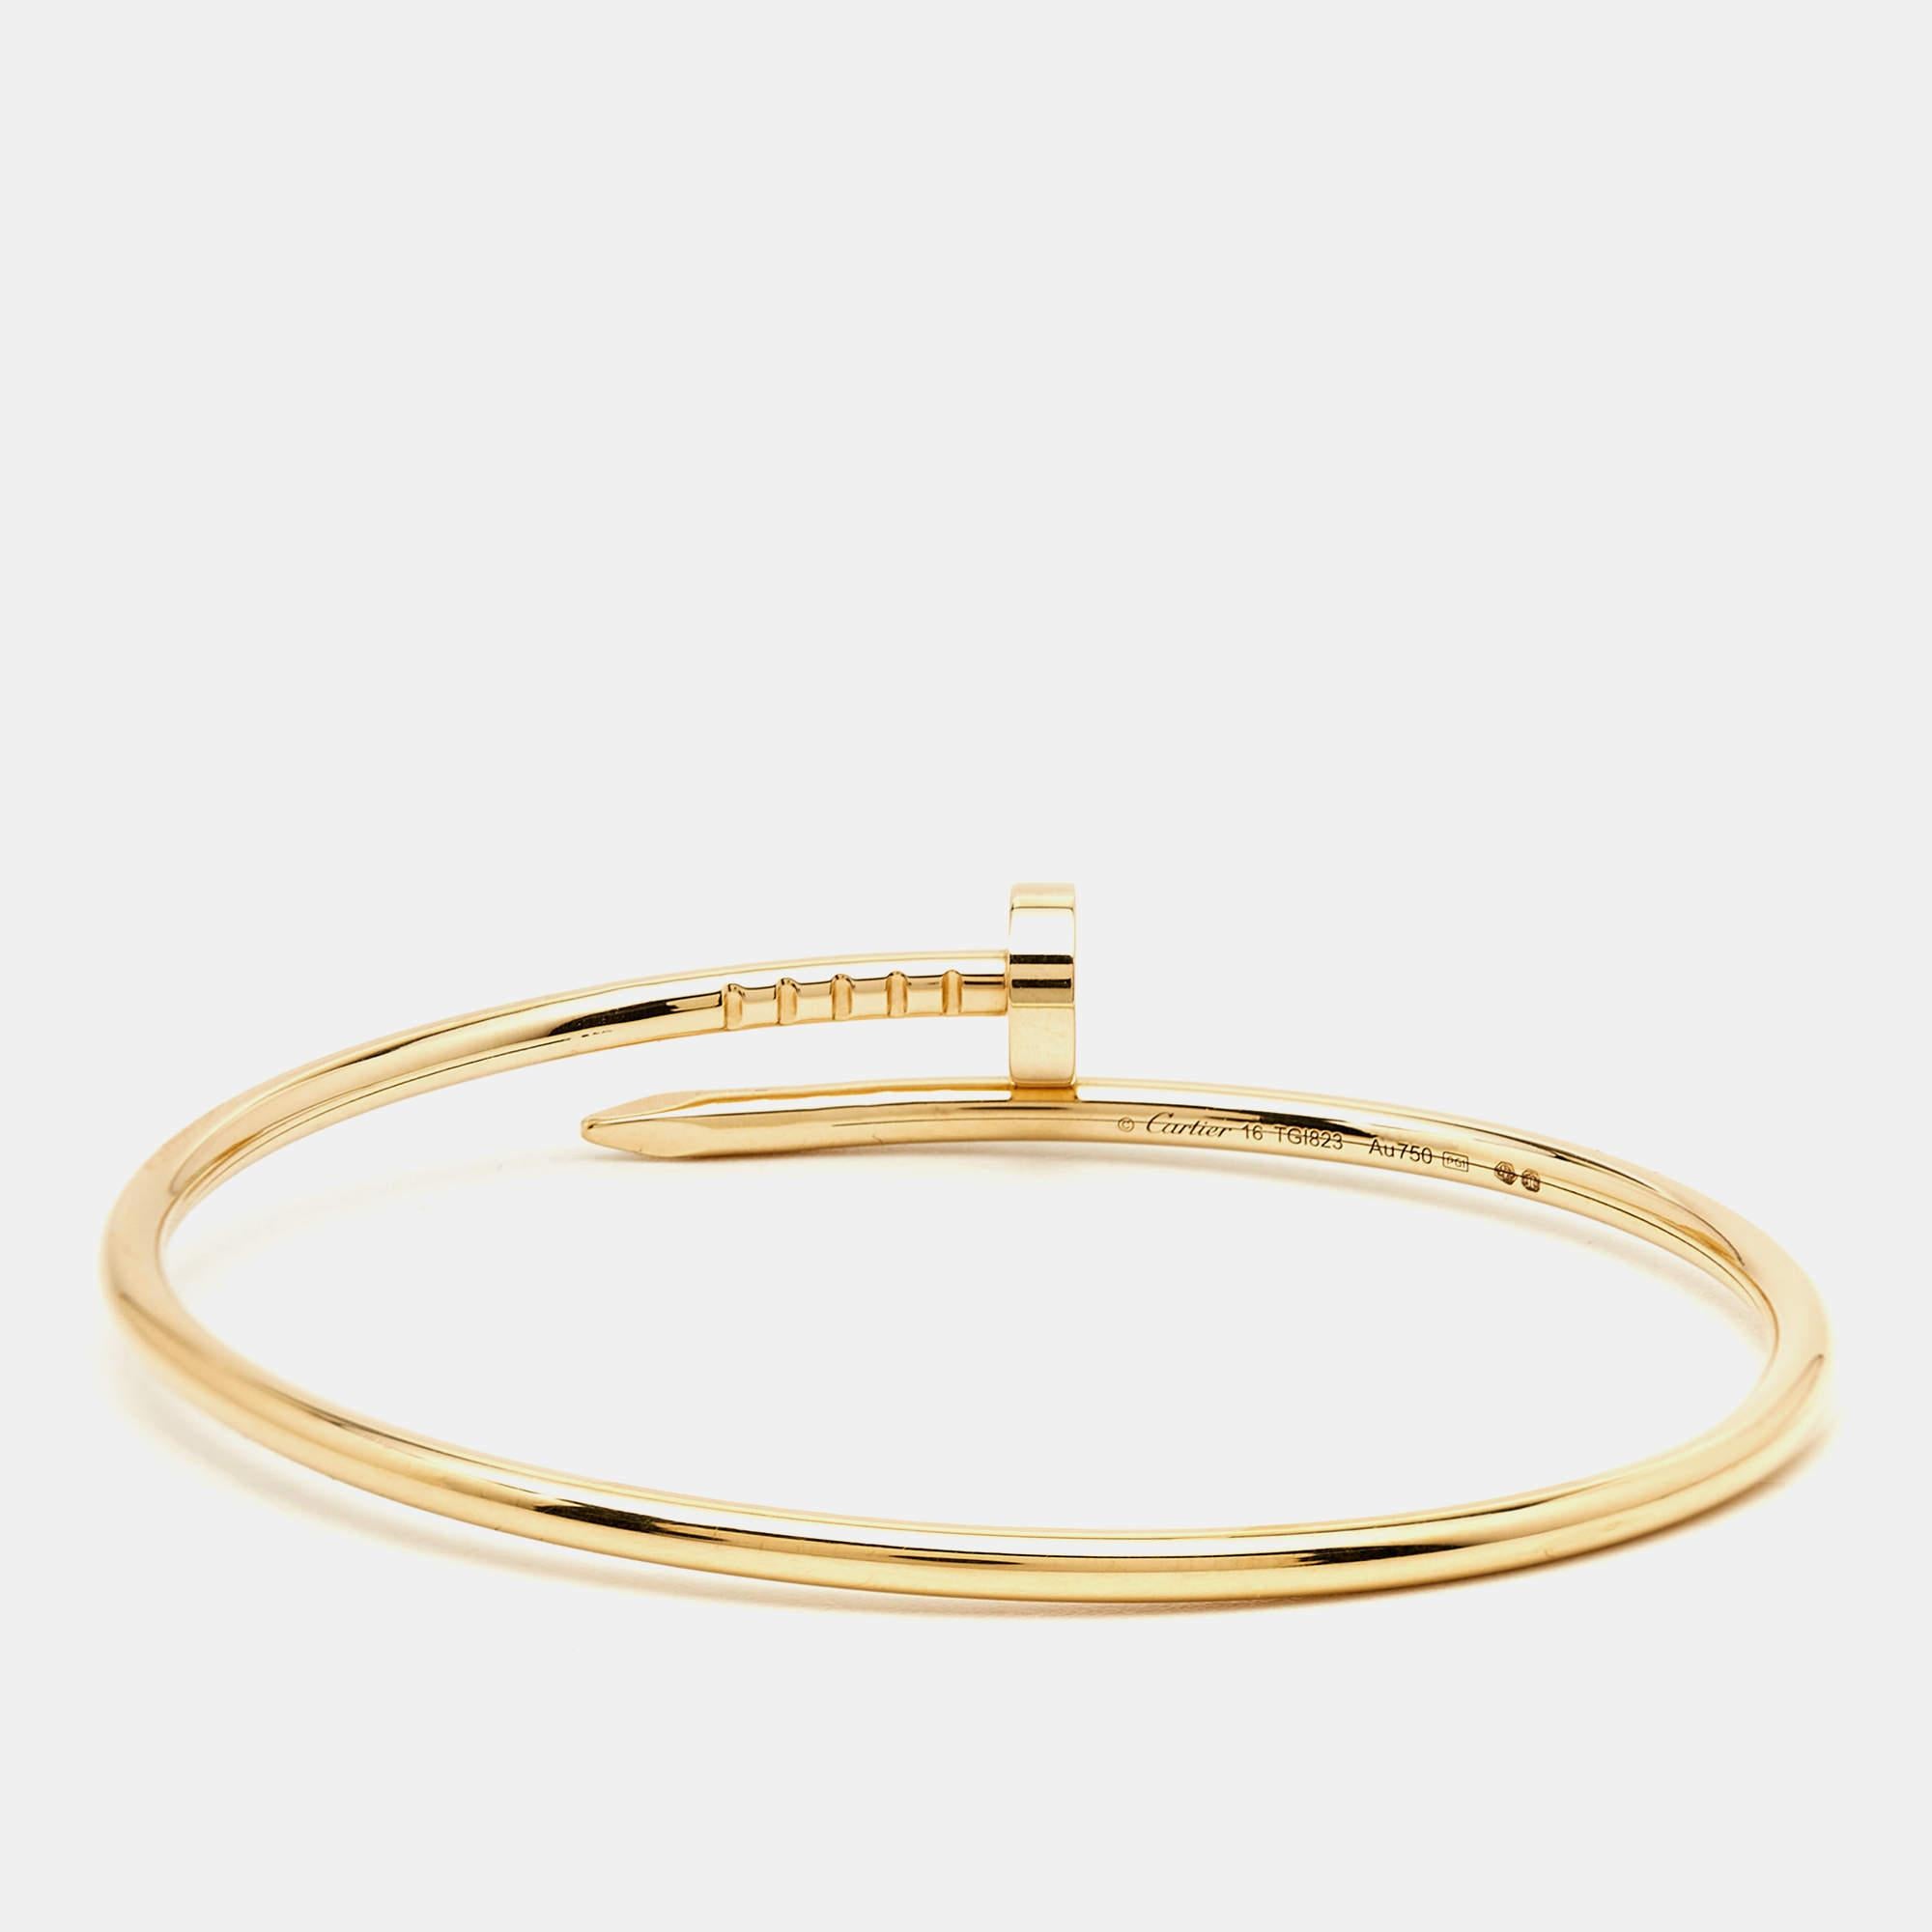 Le bracelet Juste Un Clou de Cartier est un bijou emblématique et luxueux. Fabriqué en or jaune 18 carats étincelant, son design épuré et minimaliste capture l'essence d'un ongle transformé en une déclaration de mode élégante et